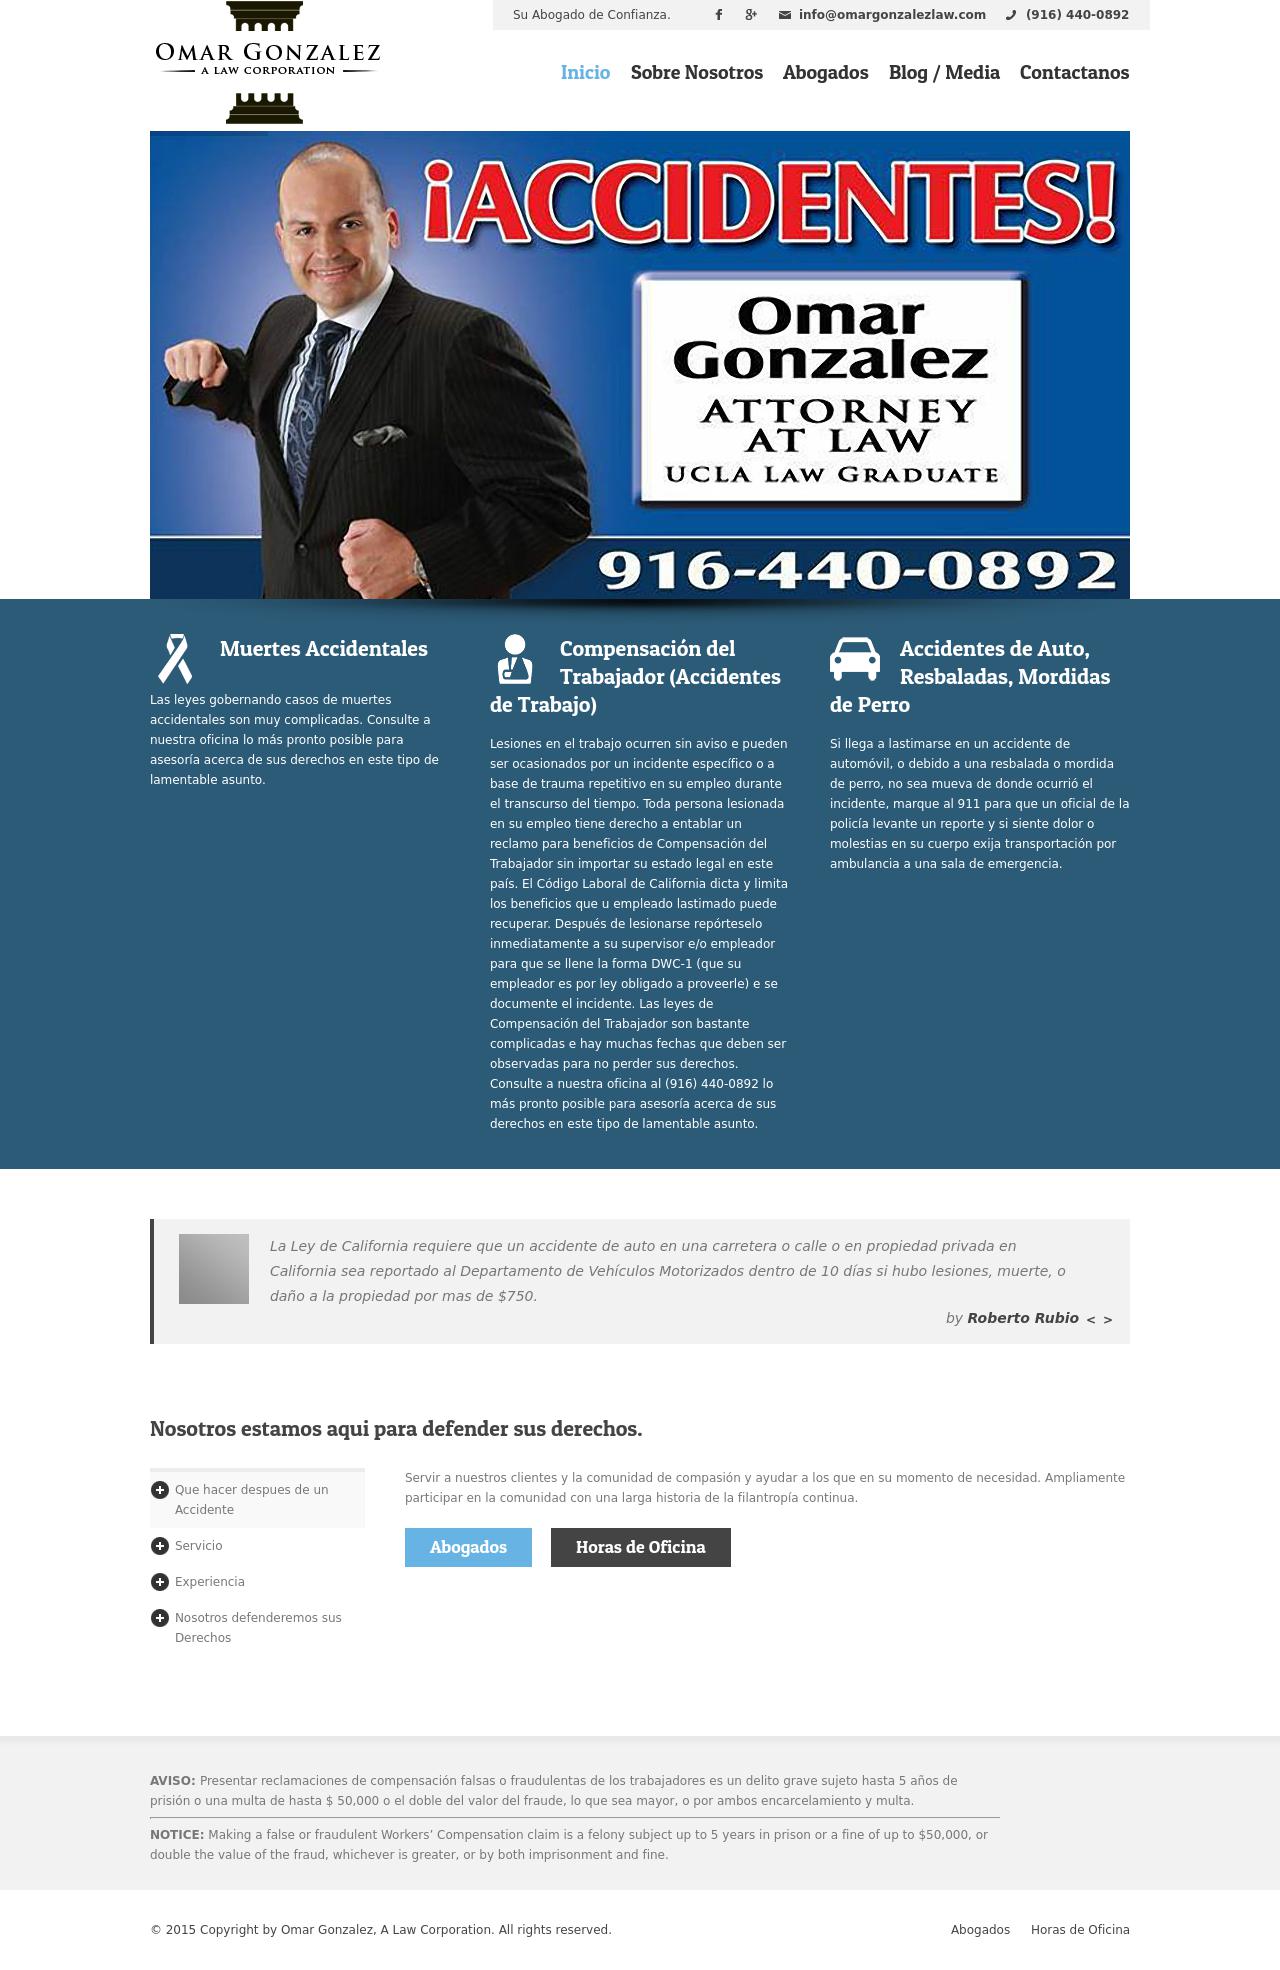 Omar Gonzalez A Law Corporation - Sacramento CA Lawyers